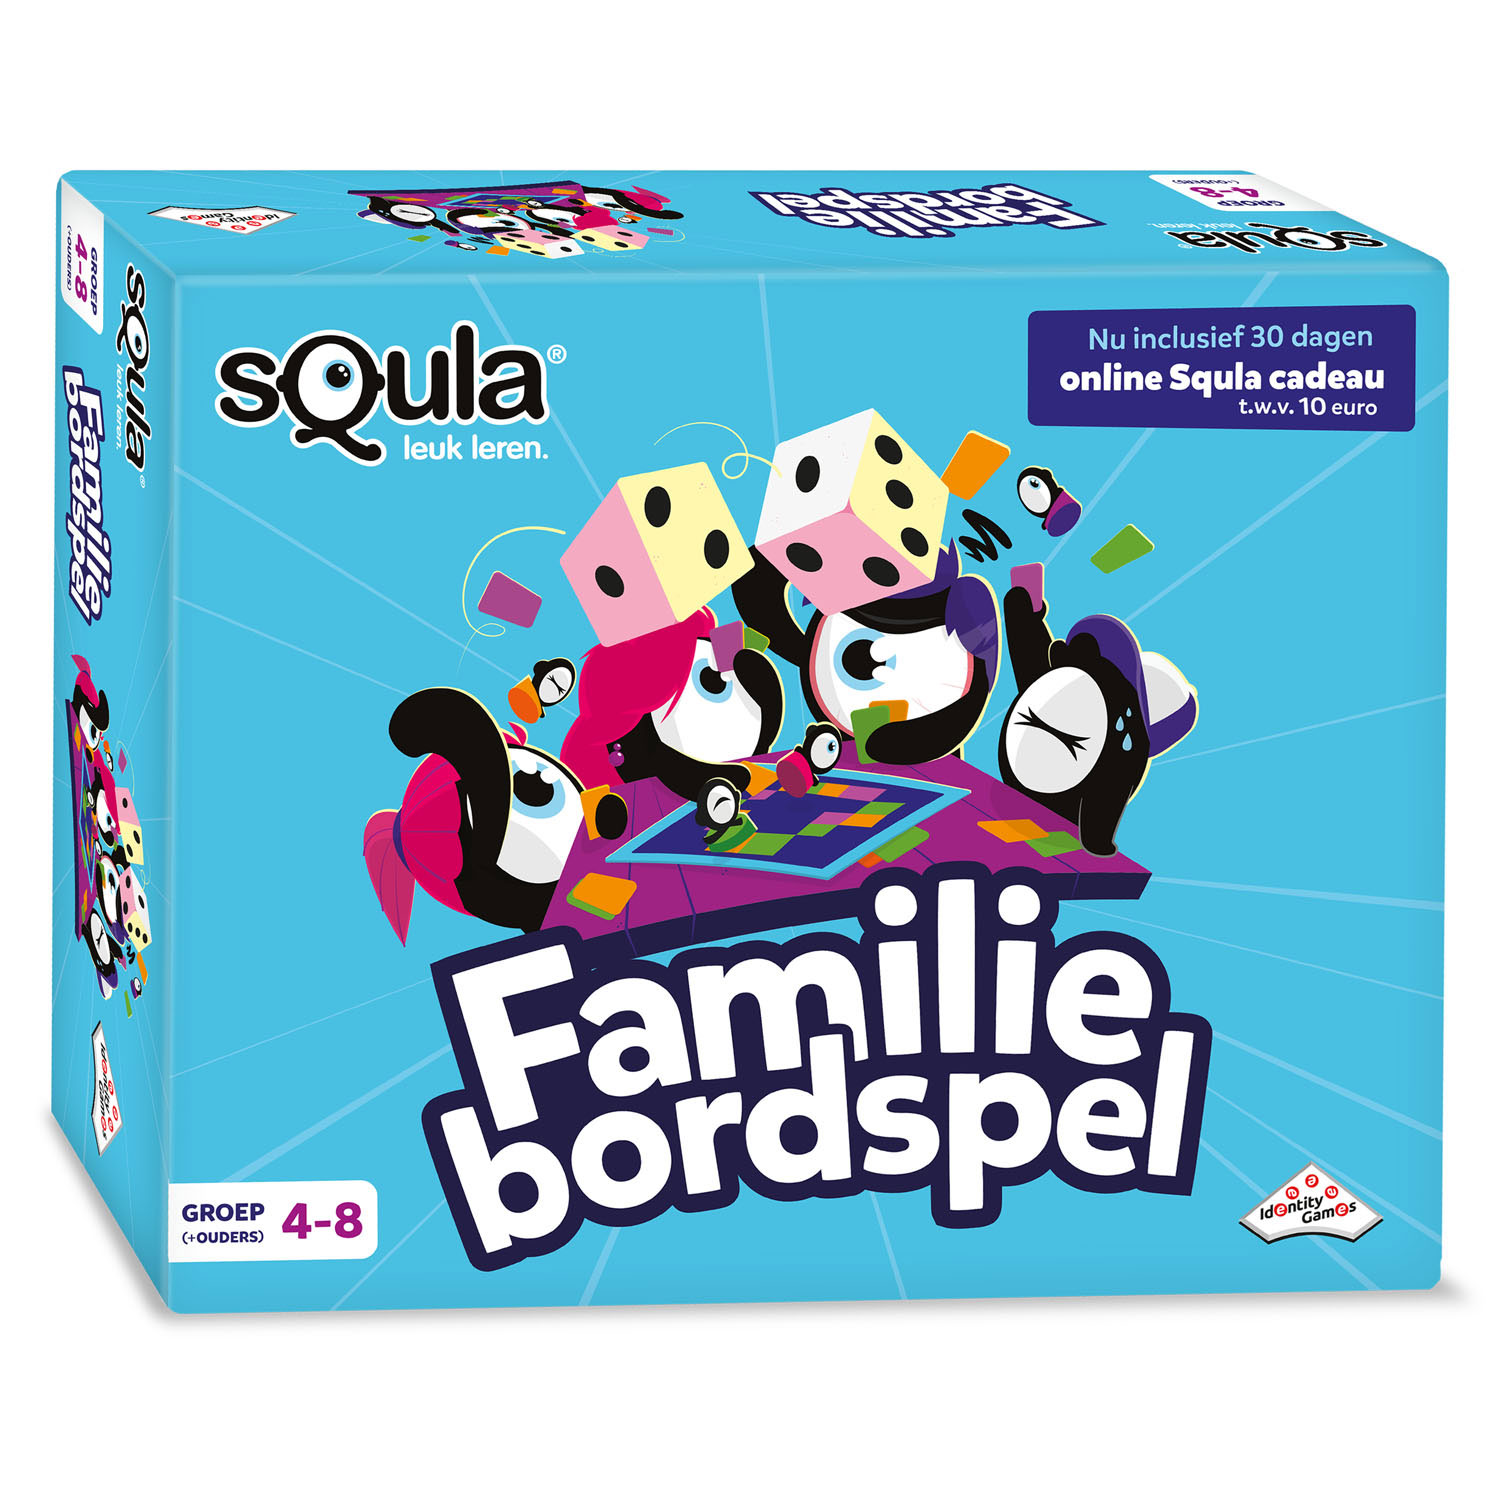 Squla Familie Bordspel